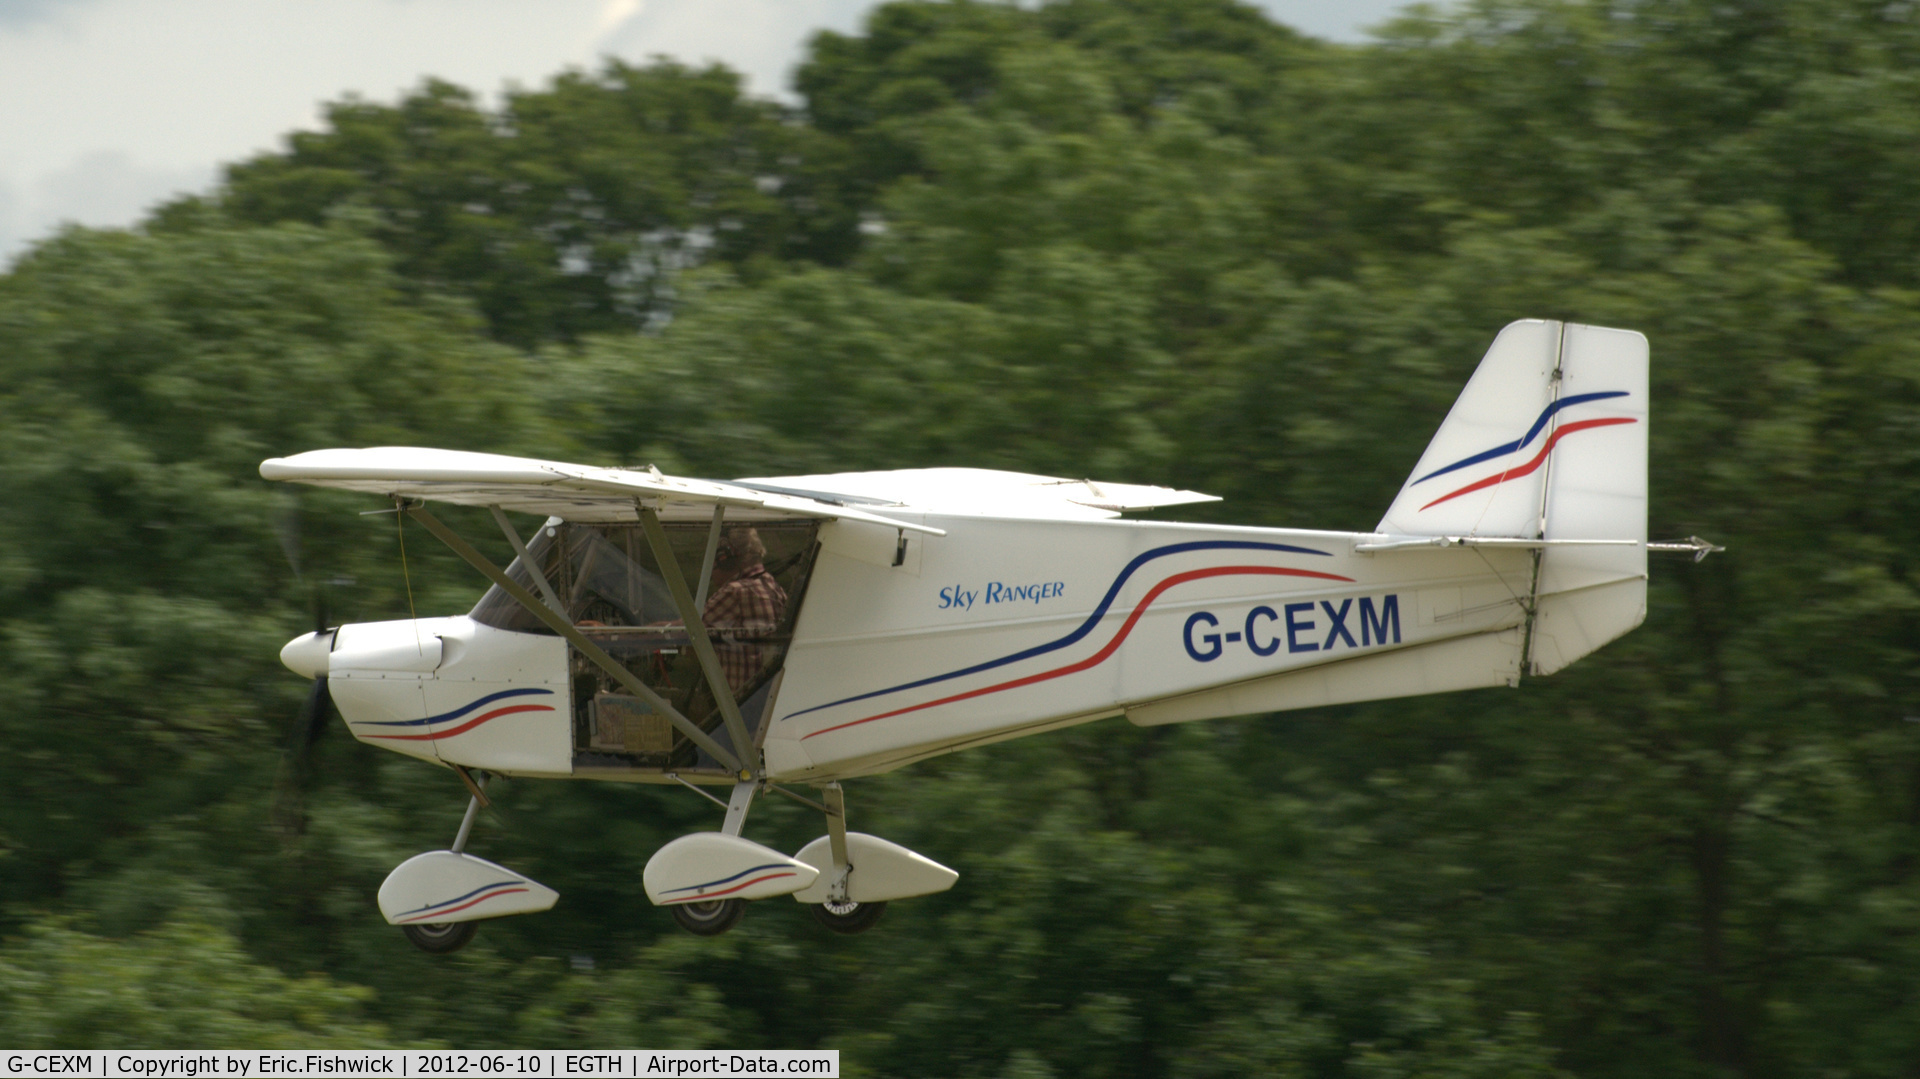 G-CEXM, 2007 Skyranger Swift 912S(1) C/N BMAA/HB/556, 4. G-CEXM departing Shuttleworth (Old Warden) Aerodrome.